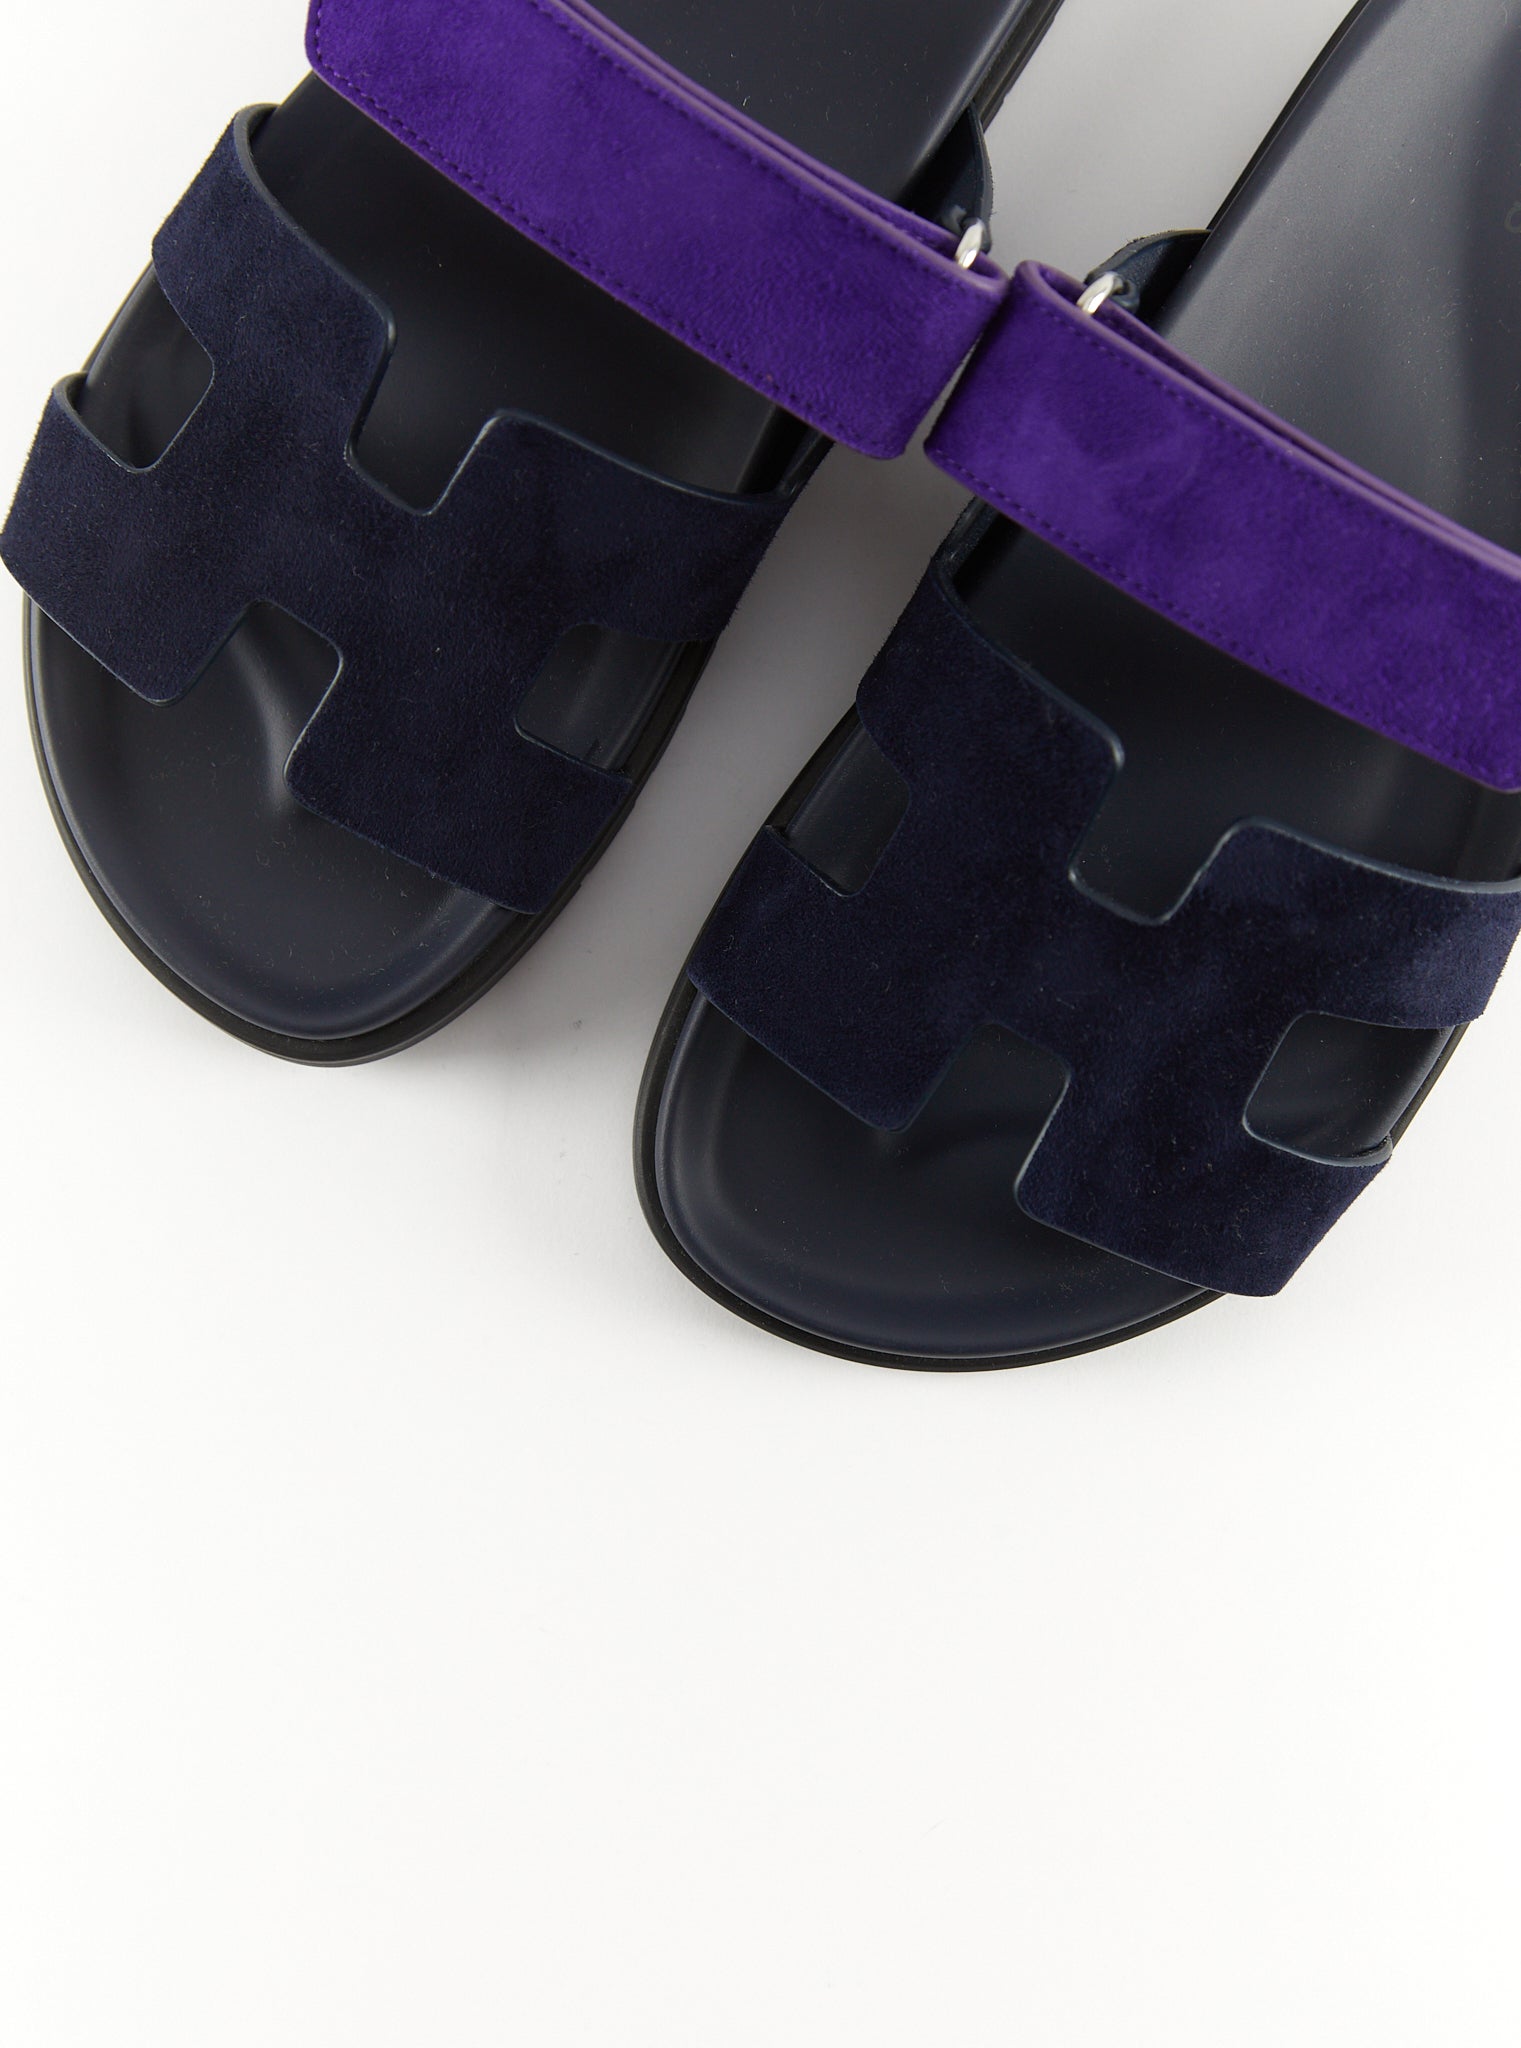 Hermès Chypre Sandals (Marine / Violet Majorette)